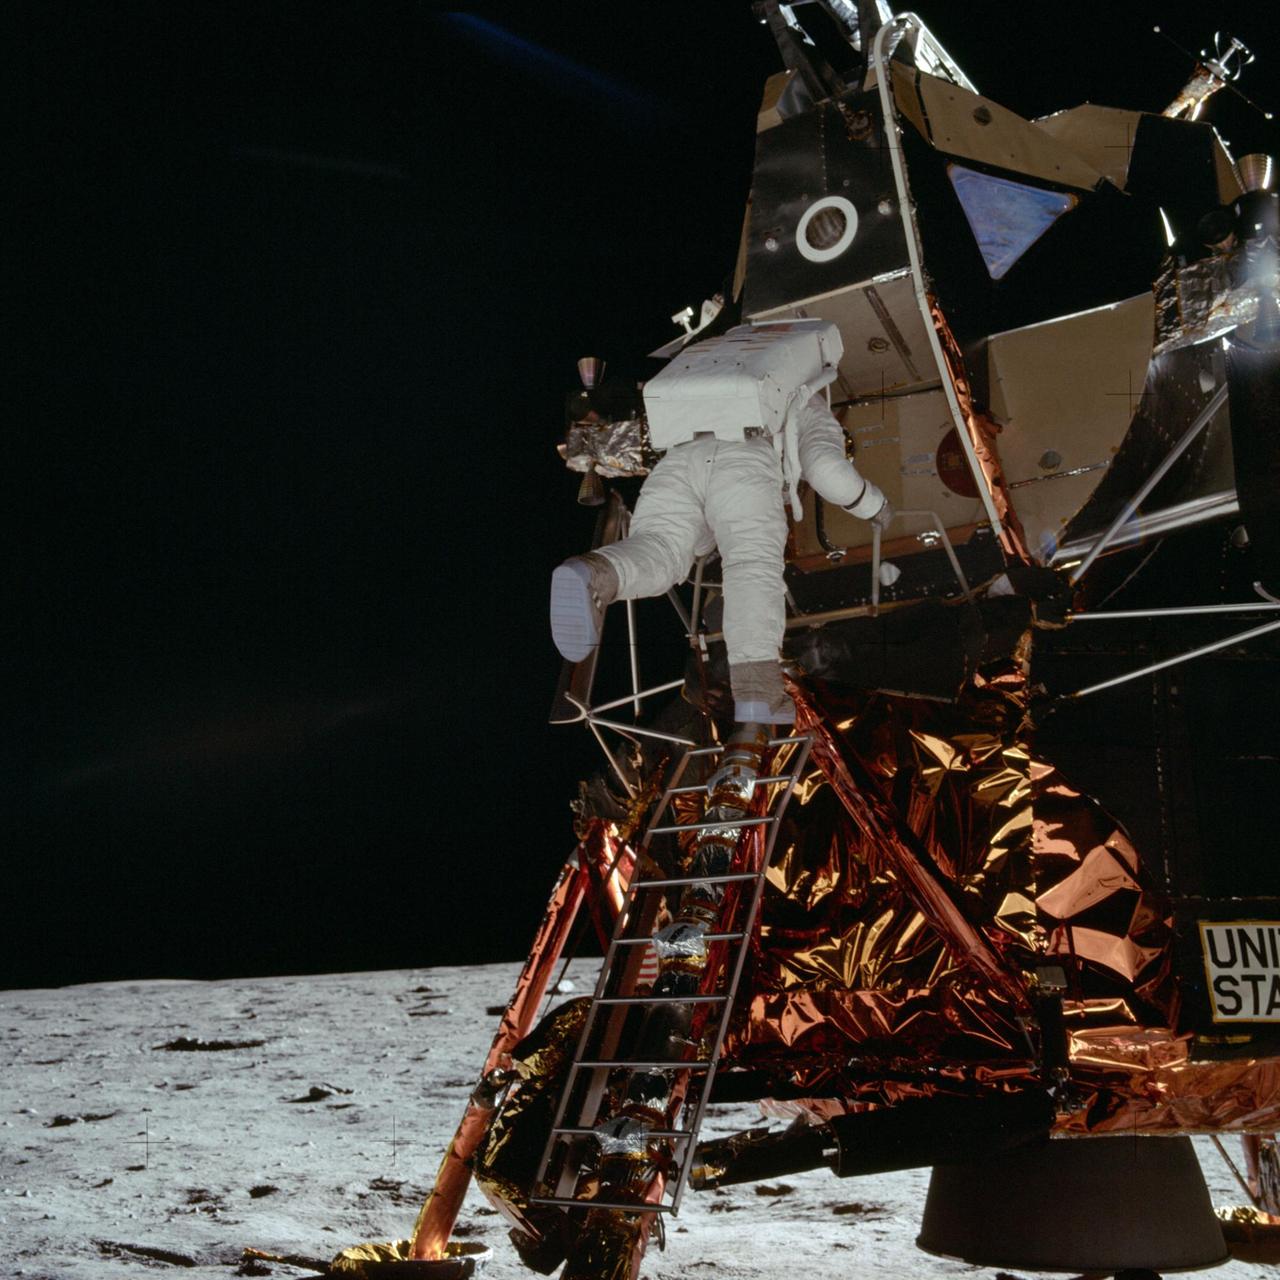 Buzz Aldrin klettert aus der Landefähre.